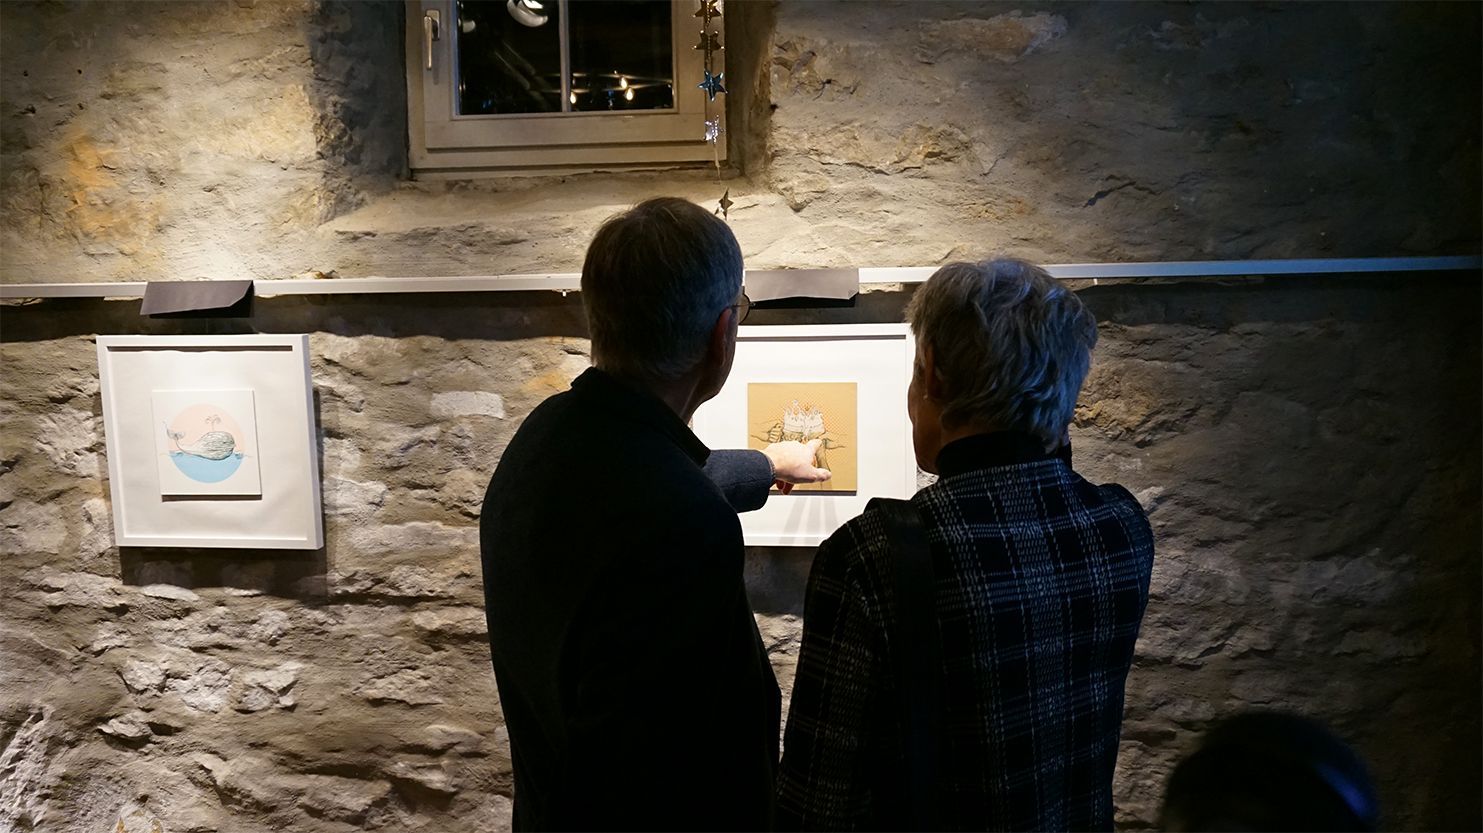 Auf dem Foto sind eine Frau und ein Mann von hinten zu sehen, die bei der Ausstellung ein Bild betrachten, auf der zwei Biergläser mit Schaumkronen abgebildet sind..